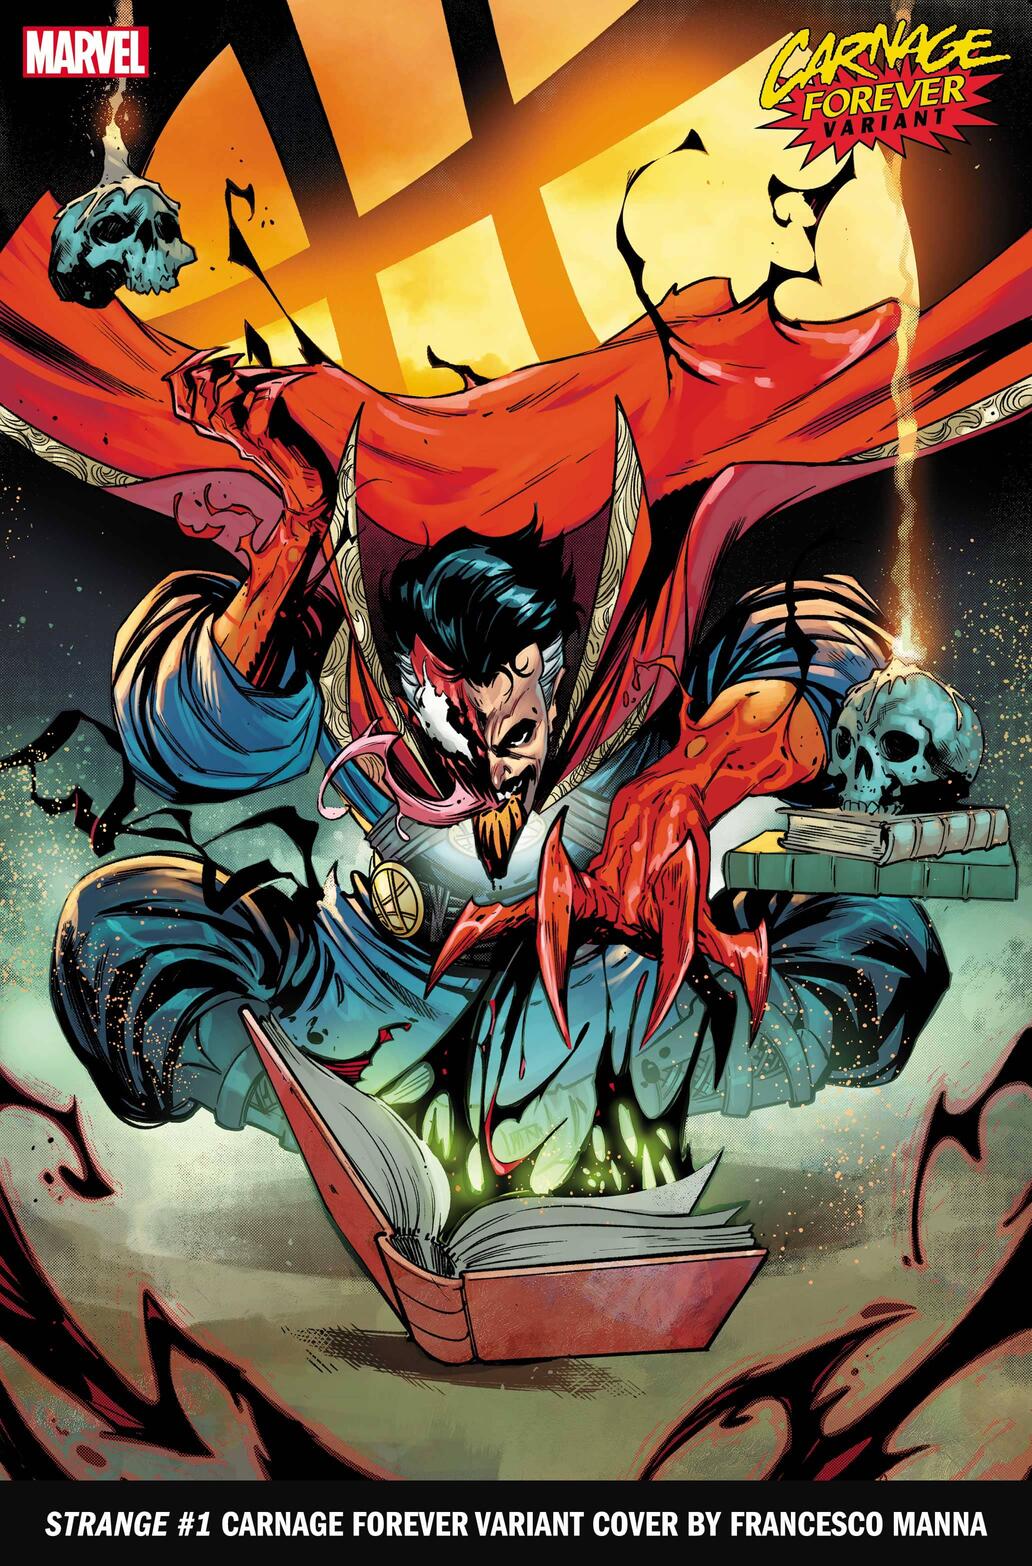 Carnage infecta a Doctor Strange en la última serie variante de Marvel